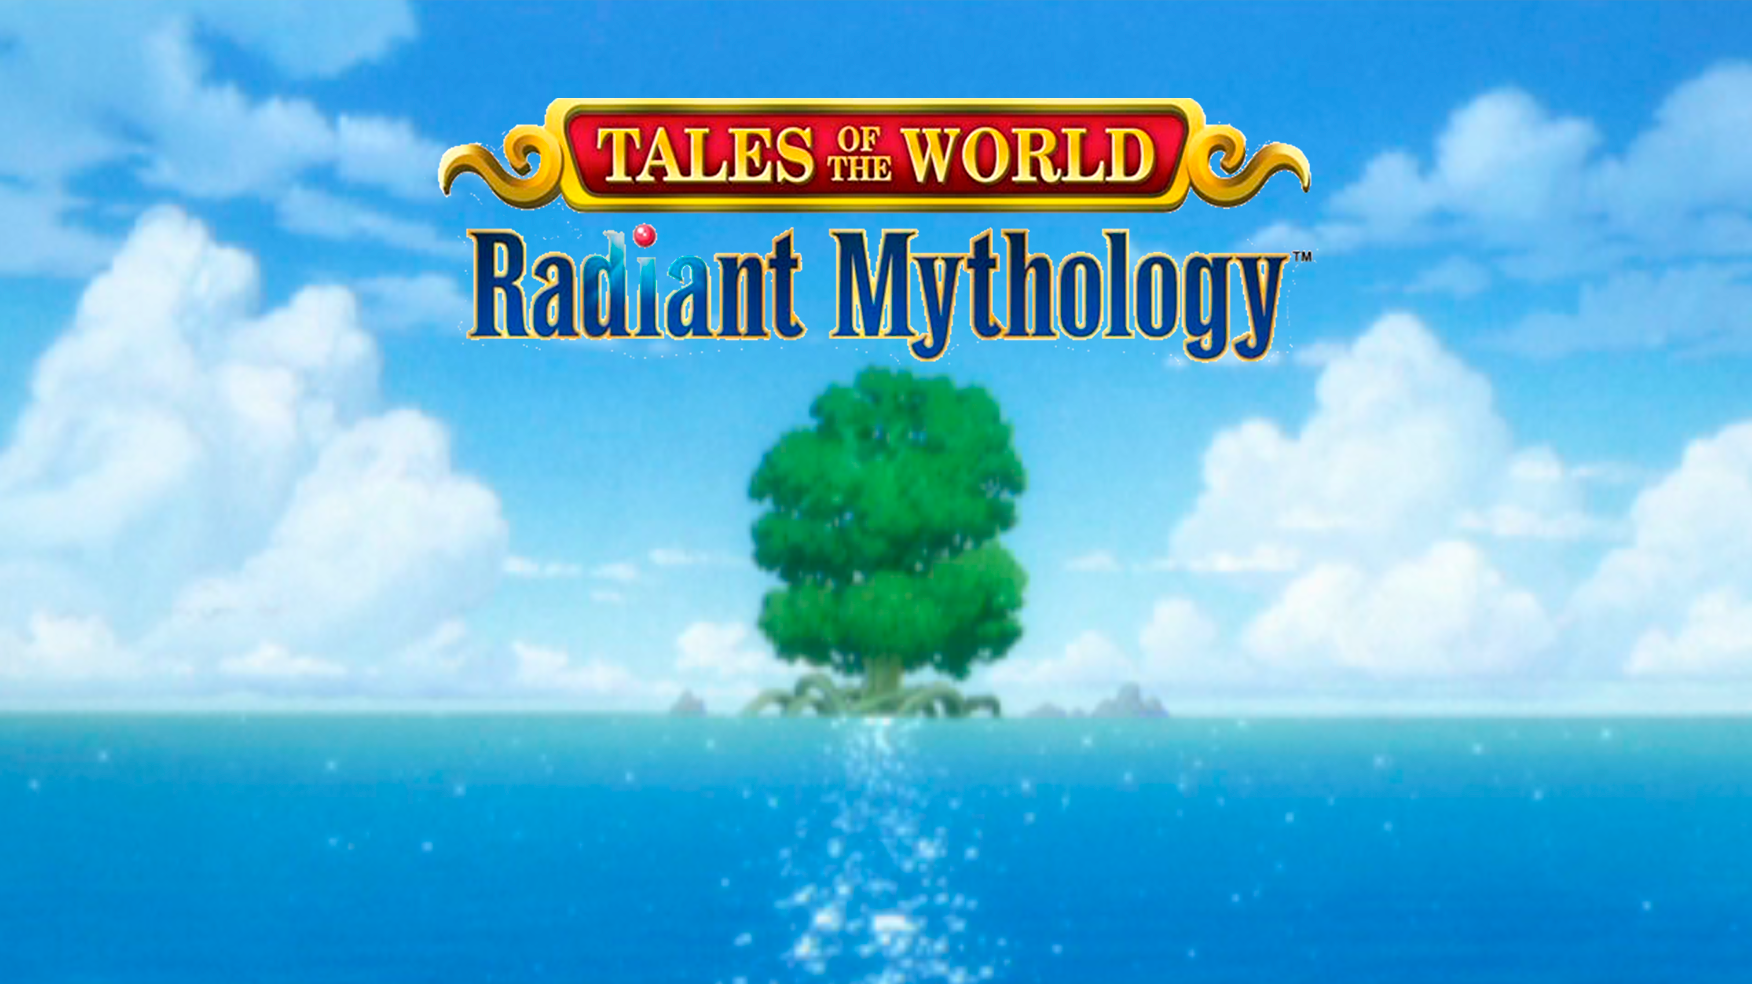 tales-of-the-world-tales-of-4-tales-of-the-world-radiant-mythology-2-3